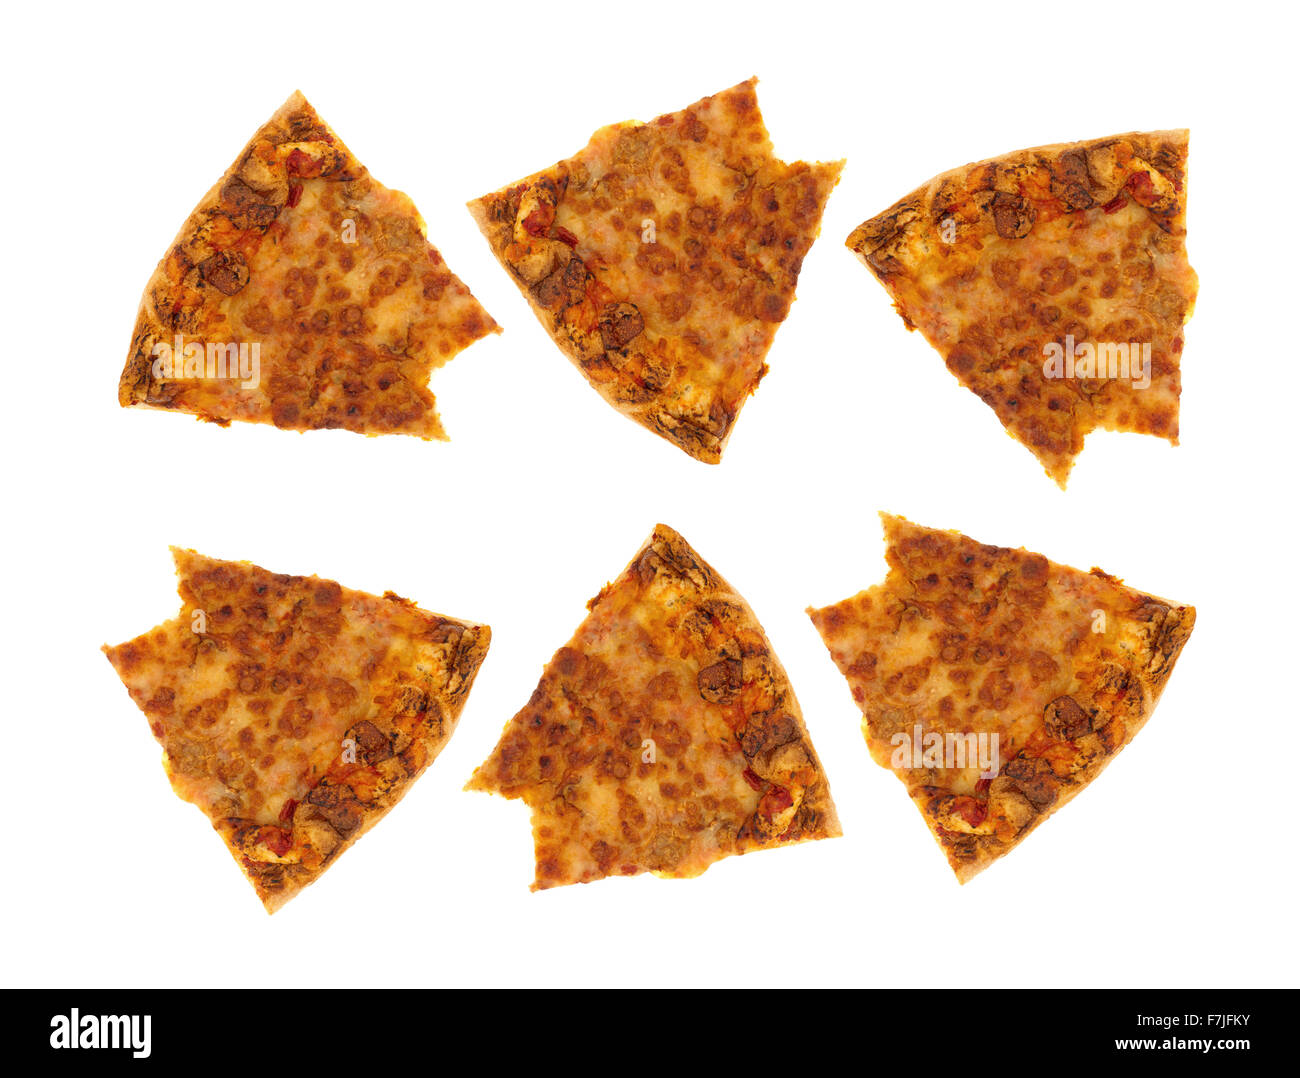 Mehrere Scheiben Tag alt kalt übrig gebliebenen Käse Pizza, die gebissen wurden isoliert auf einem weißen Hintergrund. Stockfoto